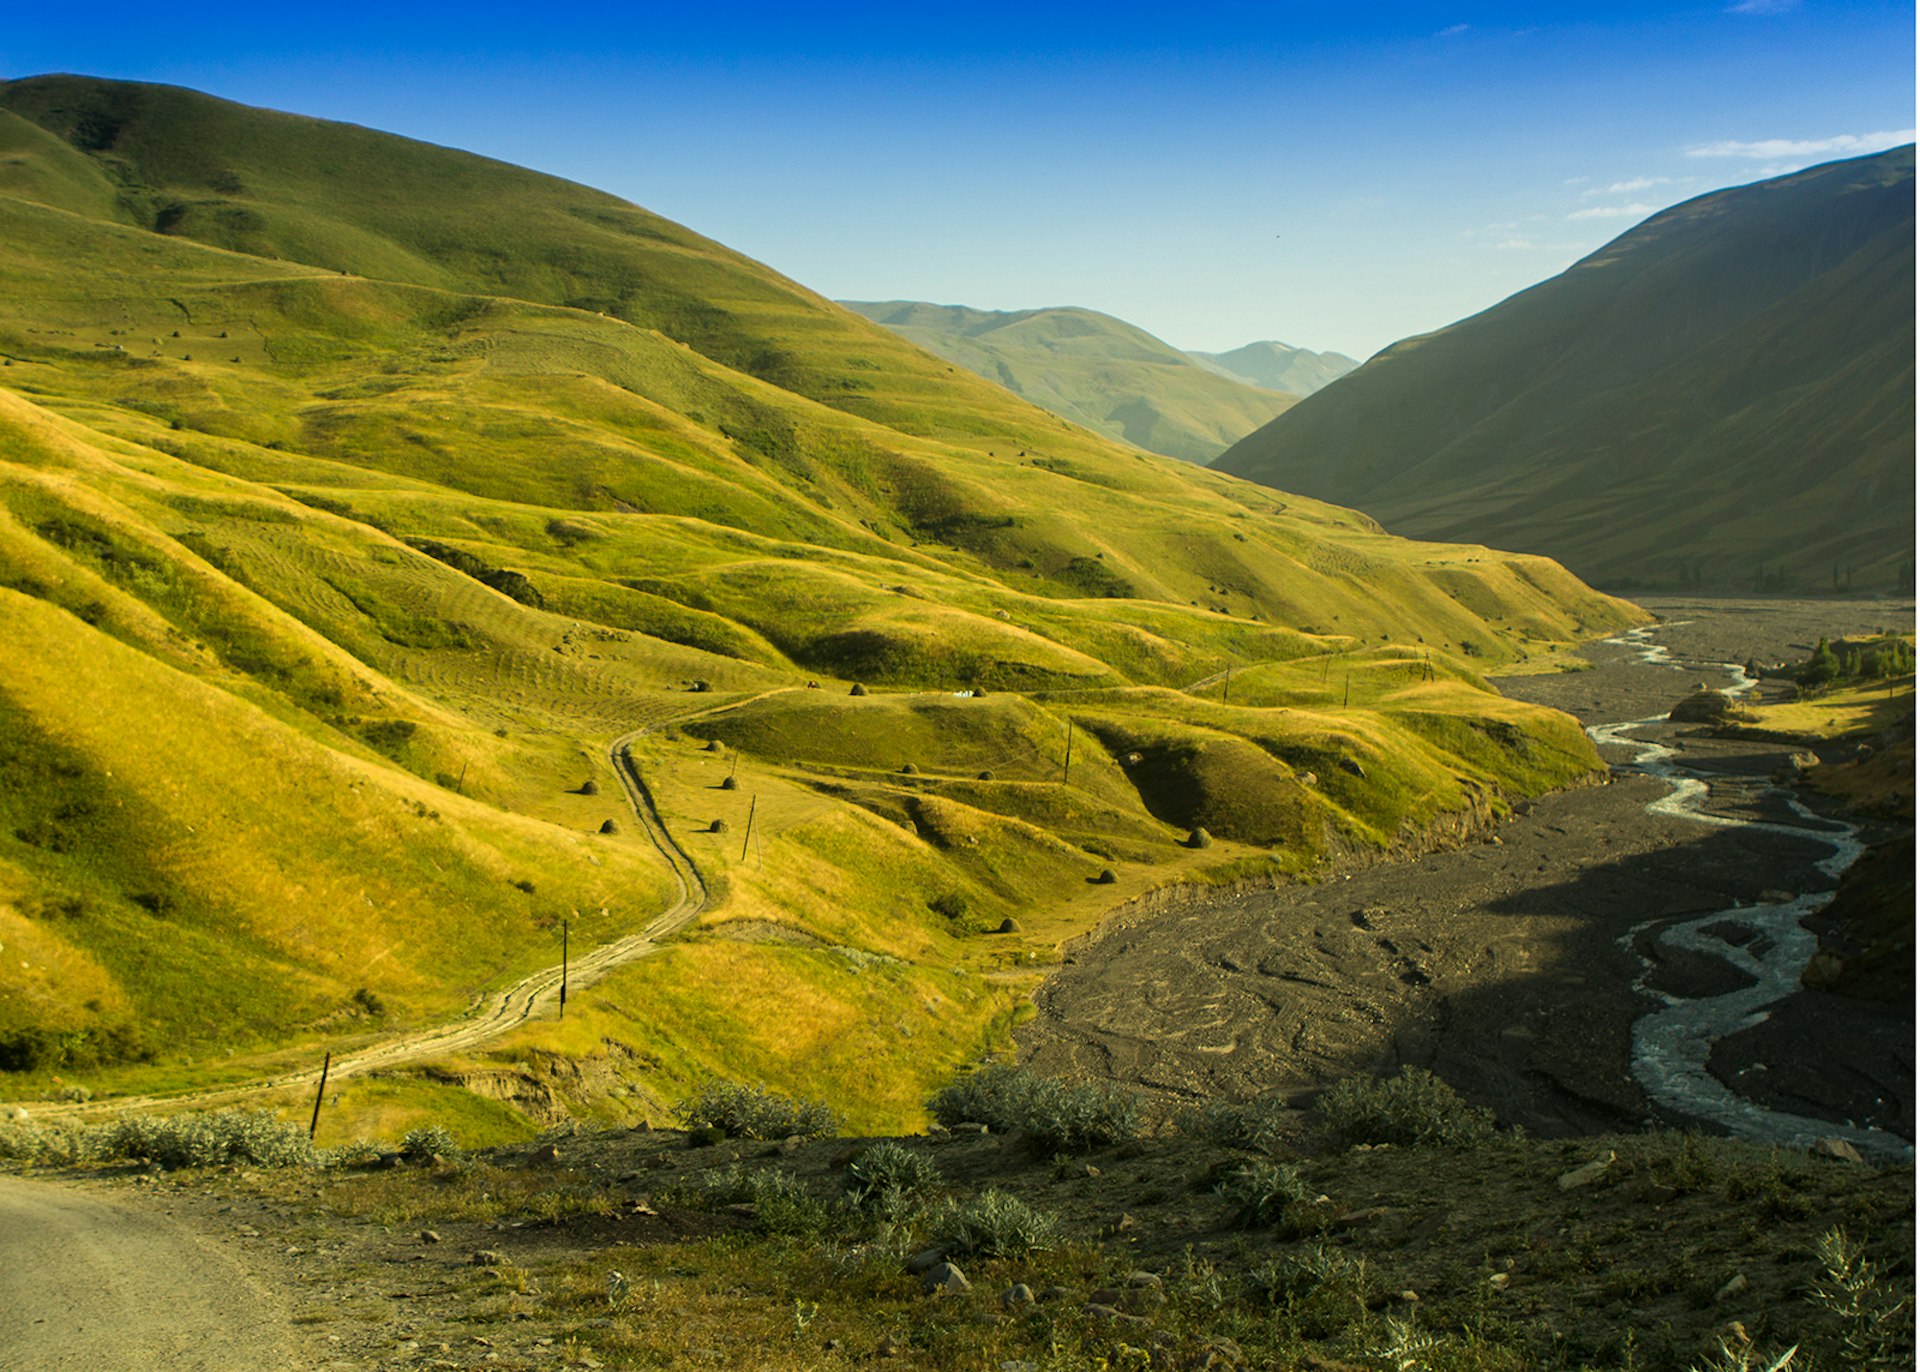 Valley leading through the Guba Mountains, Azerbaijan © Saxsagan / Shutterstock